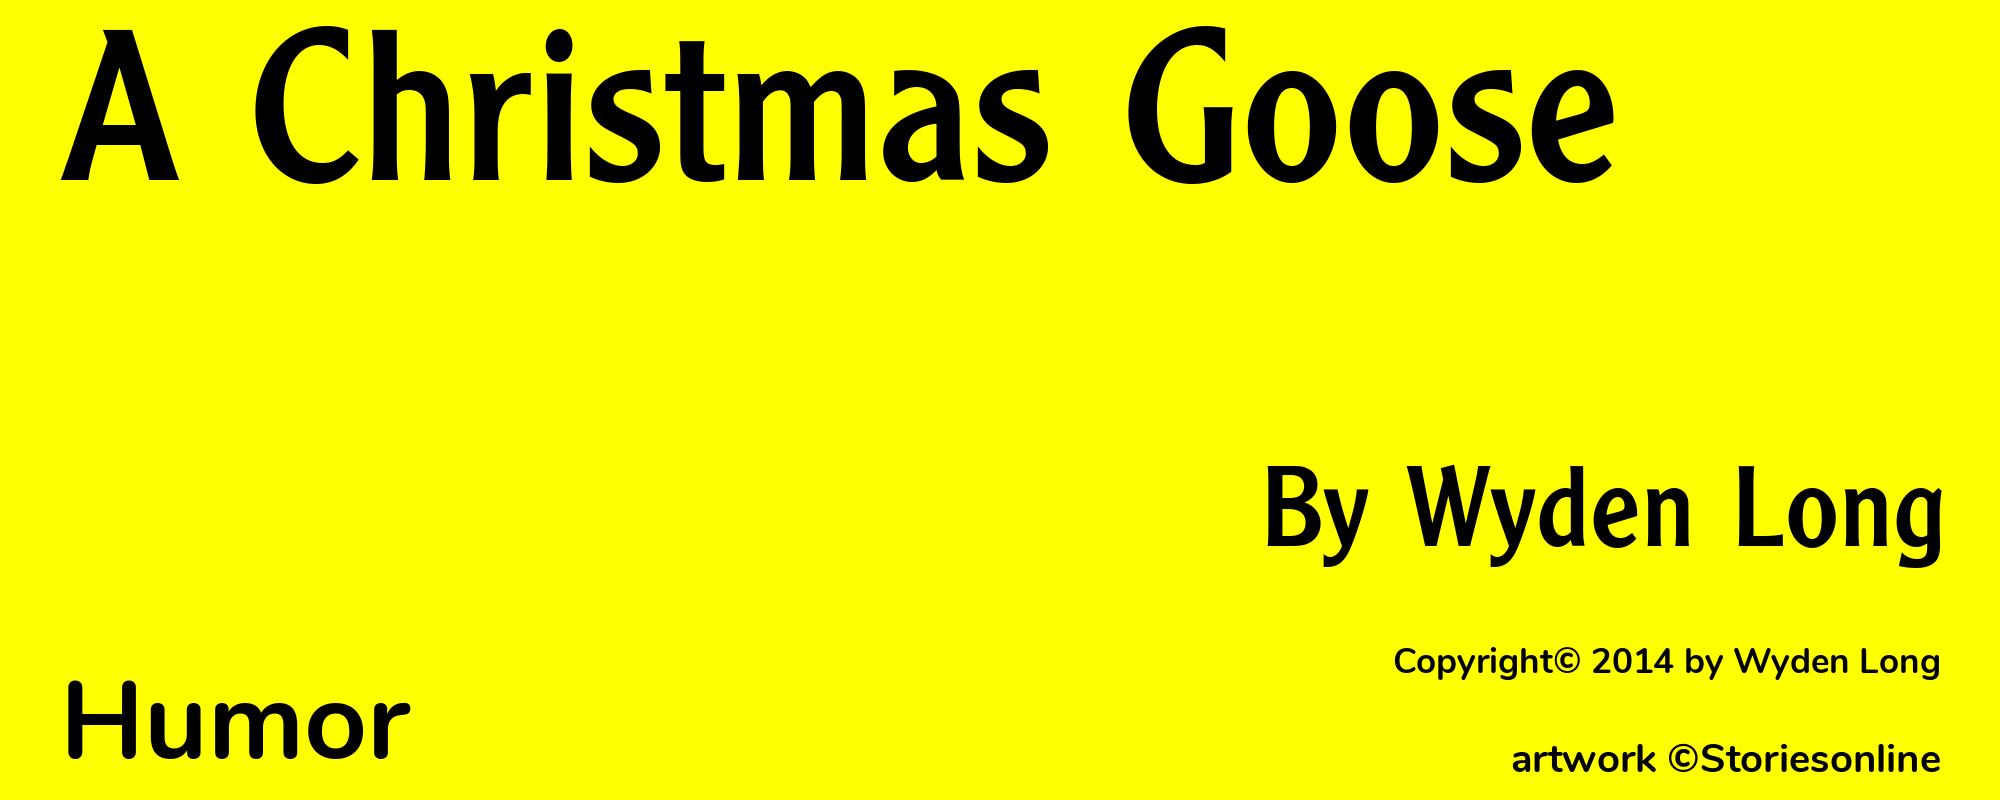 A Christmas Goose - Cover